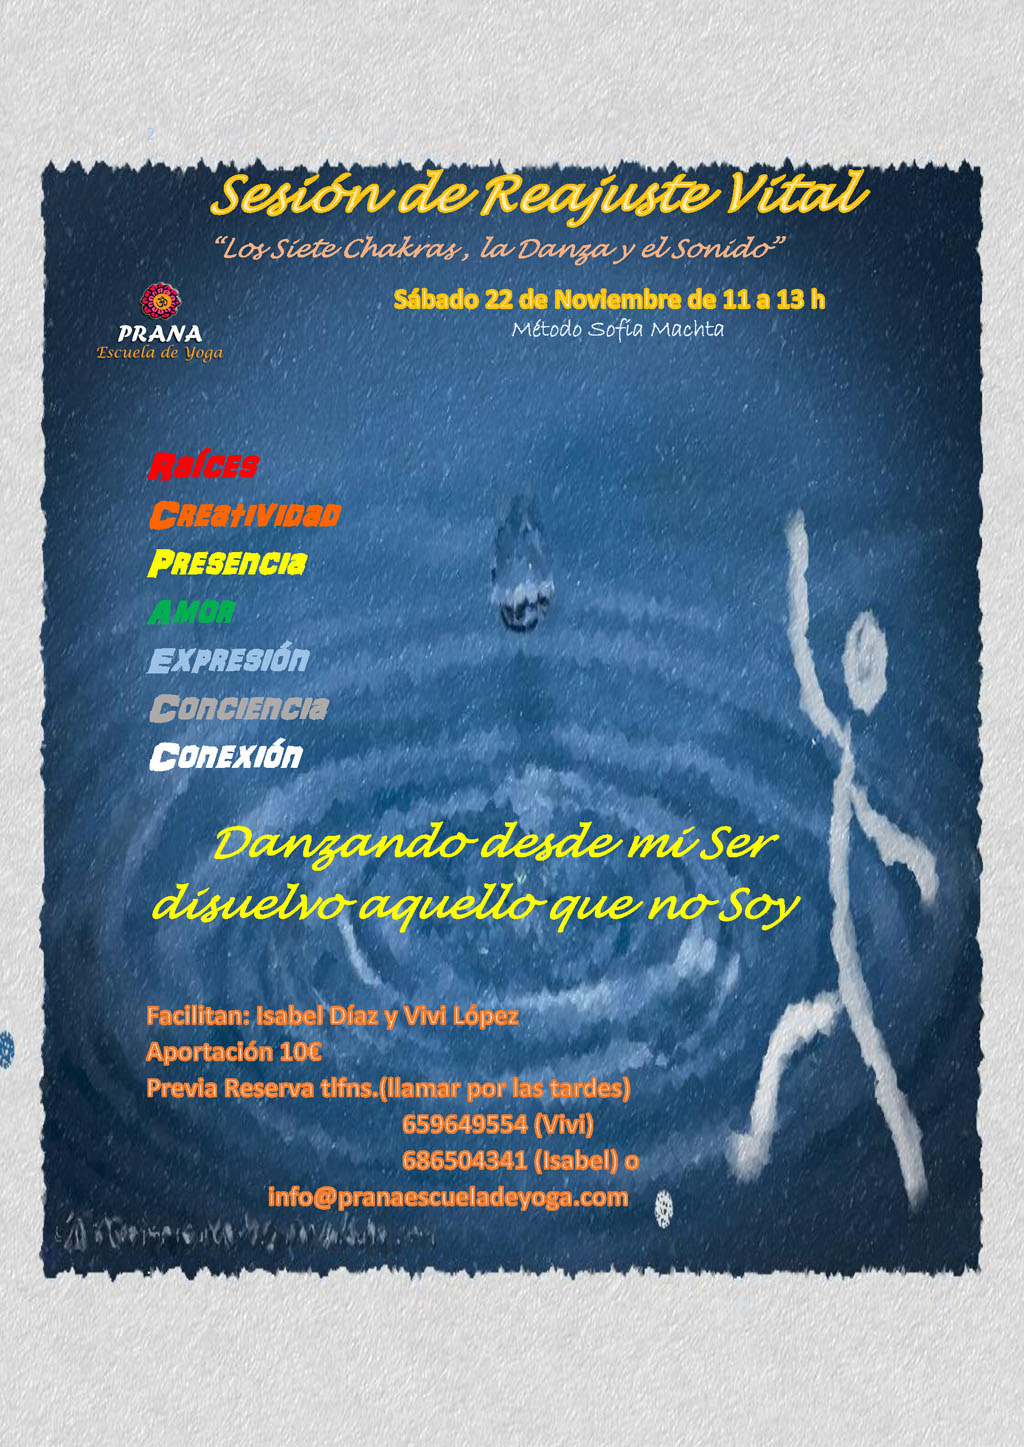 2014-11-22 - Prana - Sesion RV